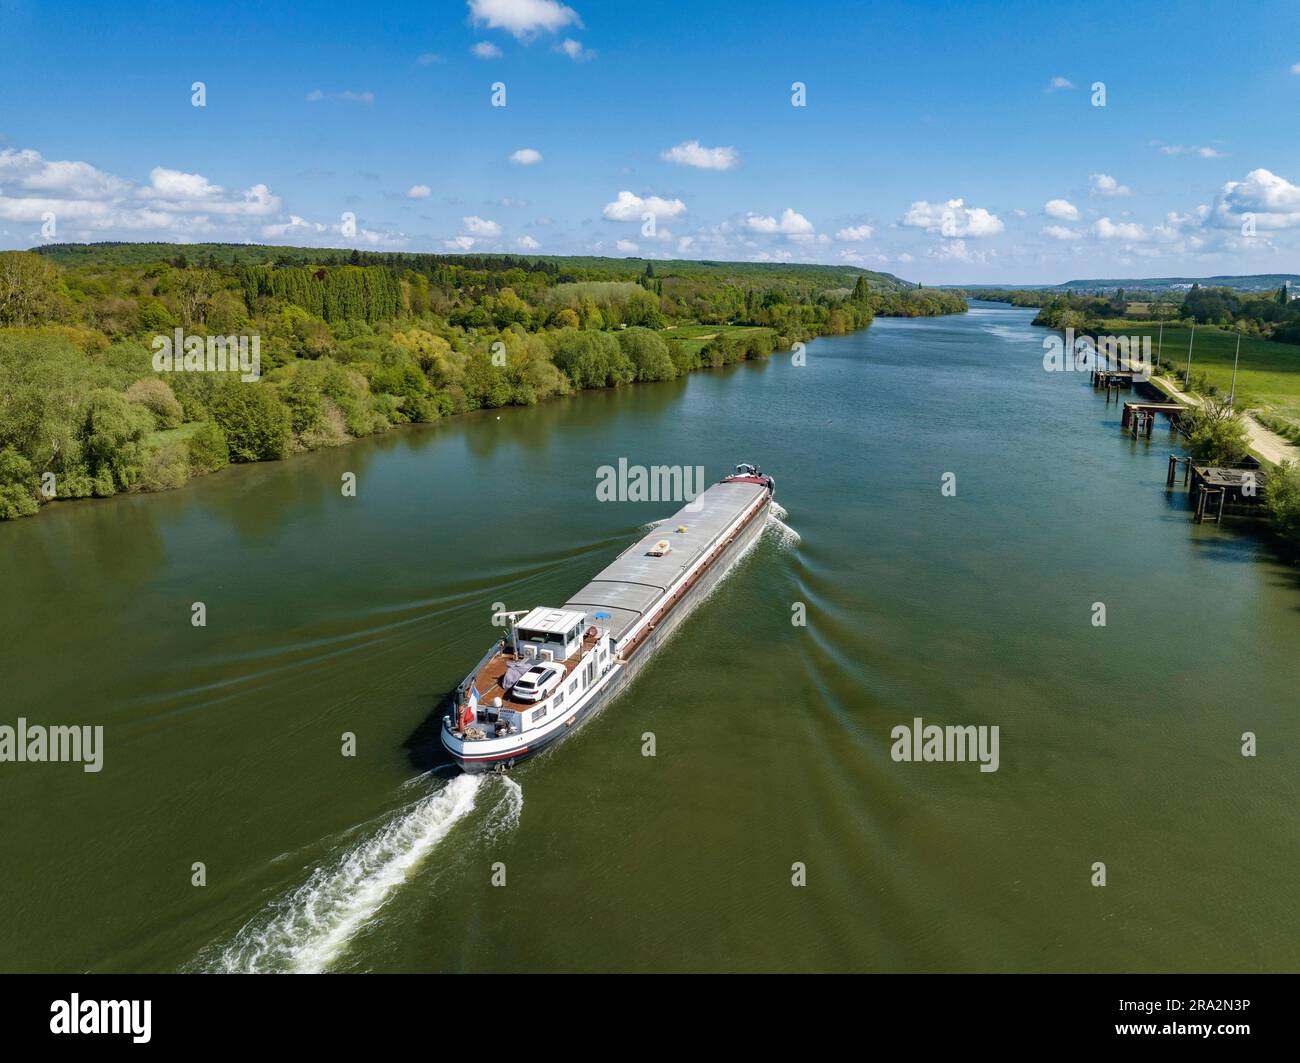 France, Eure, Saint Pierre d'Autils, Acheron barge on the Seine (aerial view) Stock Photo